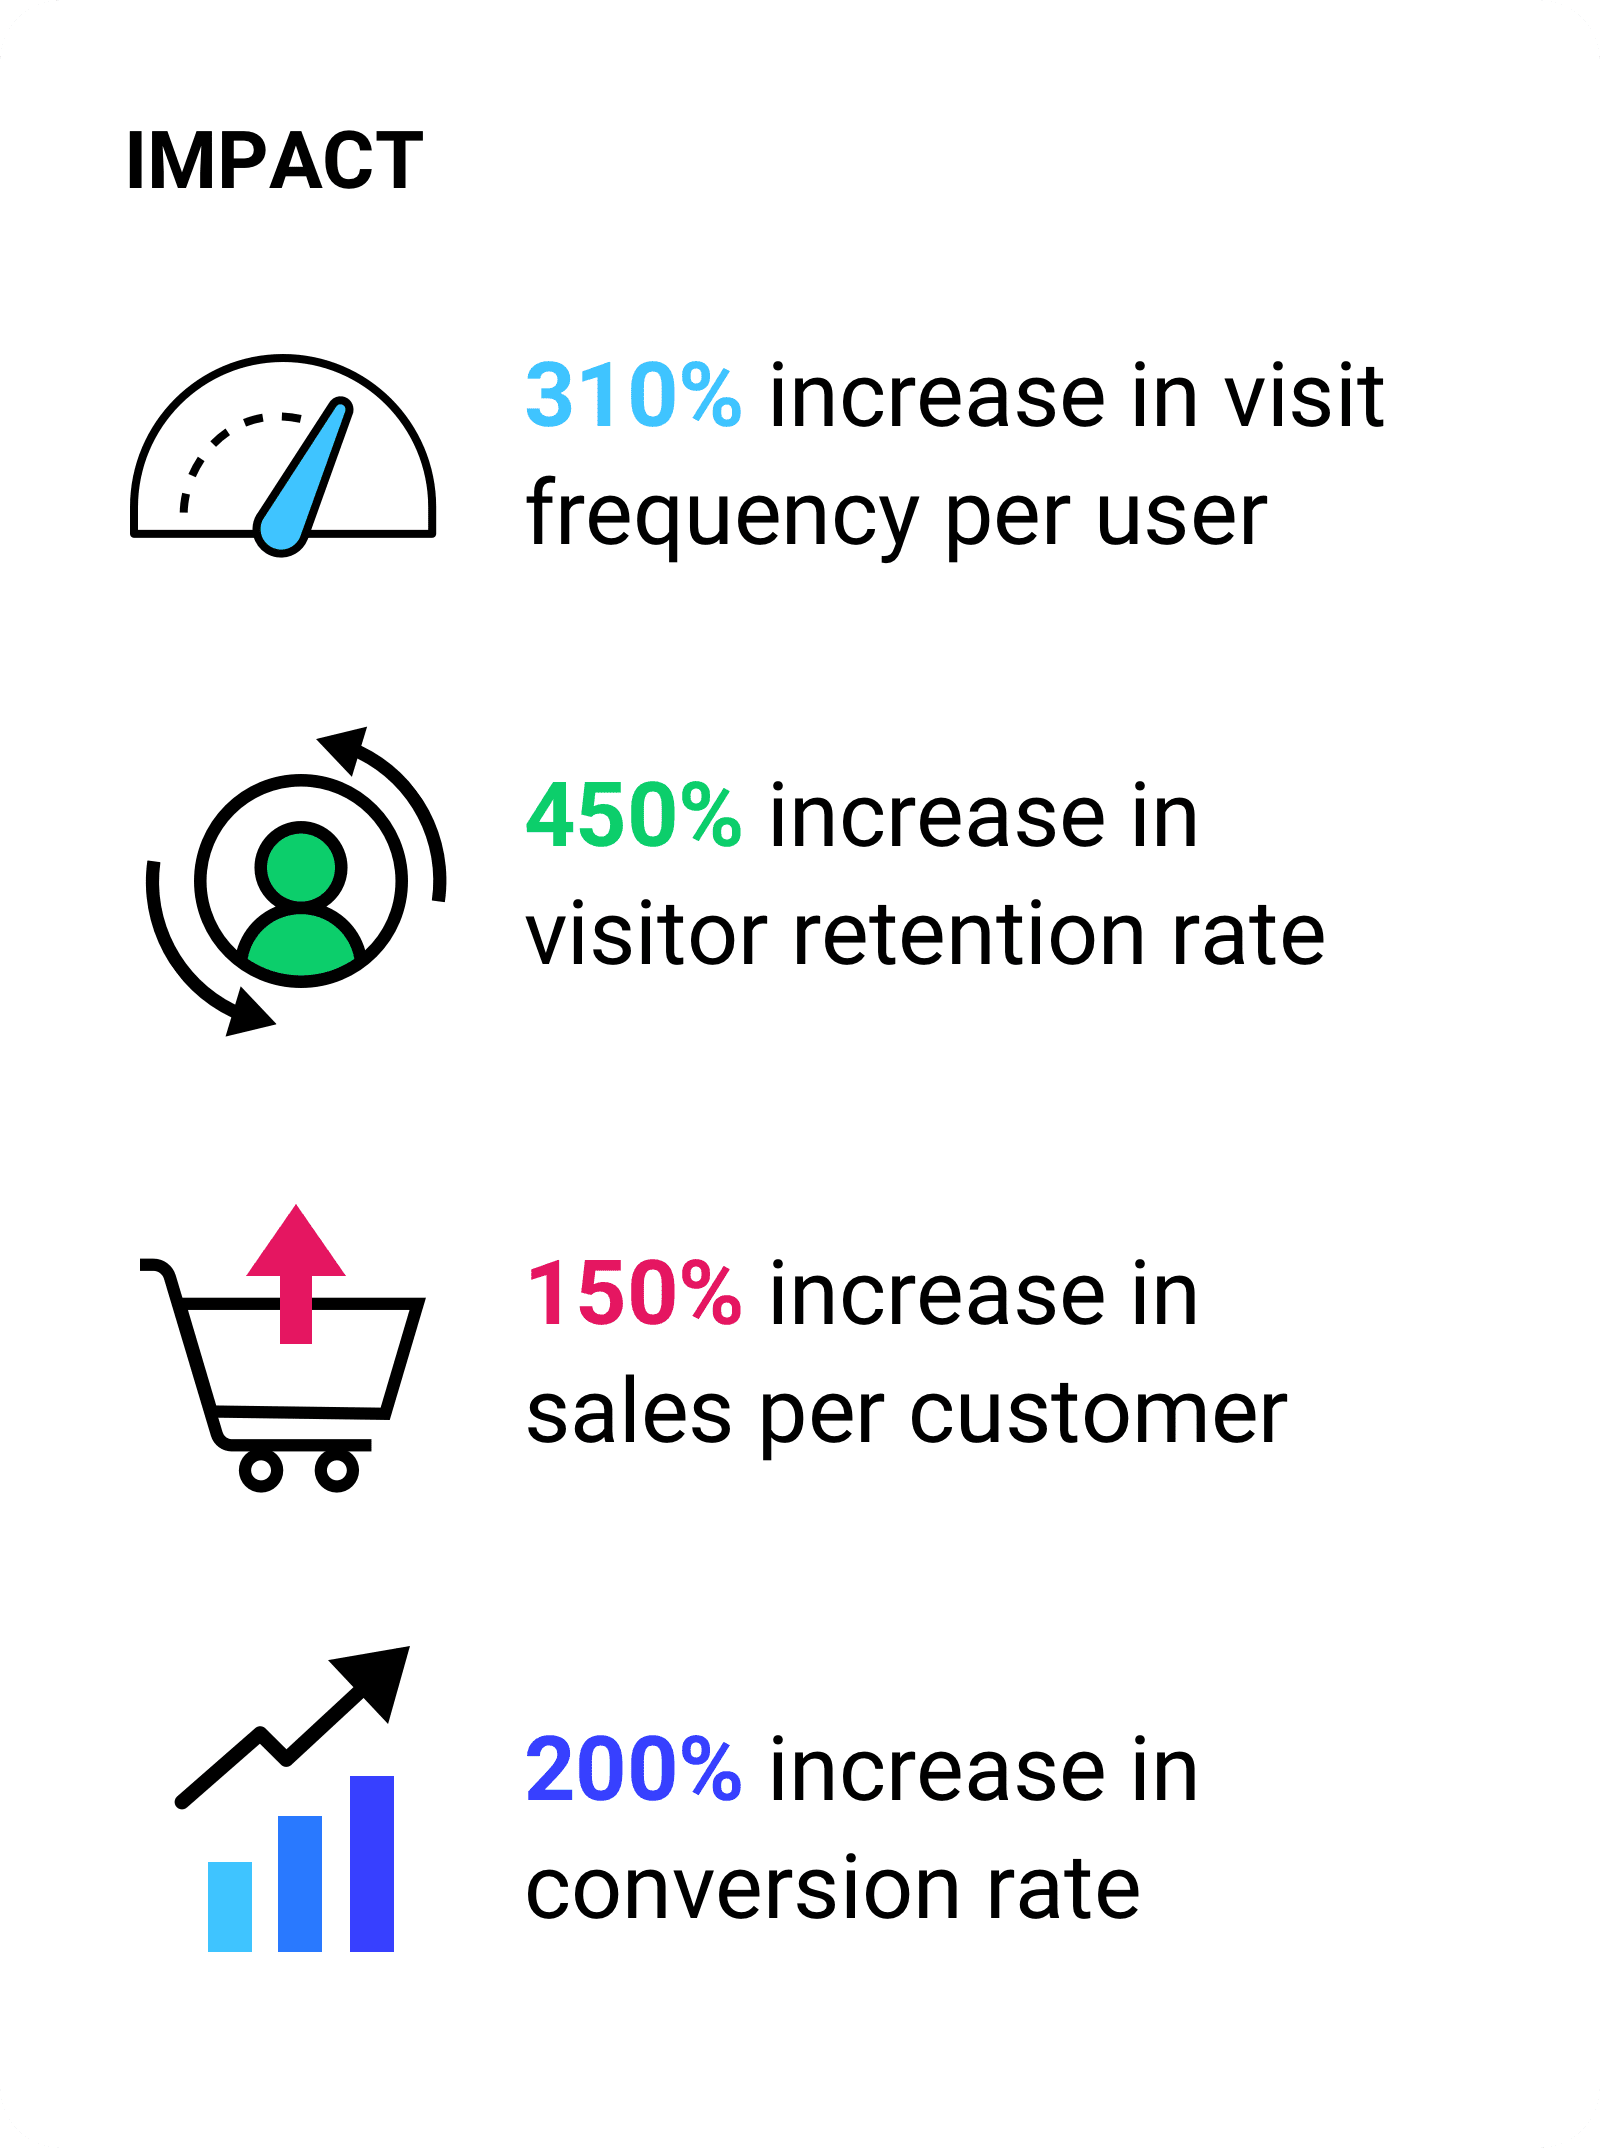 Peningkatan frekuensi kunjungan per pengguna sebesar 310%.  Peningkatan rasio retensi pengunjung sebesar 450%. Peningkatan penjualan per pelanggan sebesar 150%. Peningkatan rasio konversi sebesar 200%.